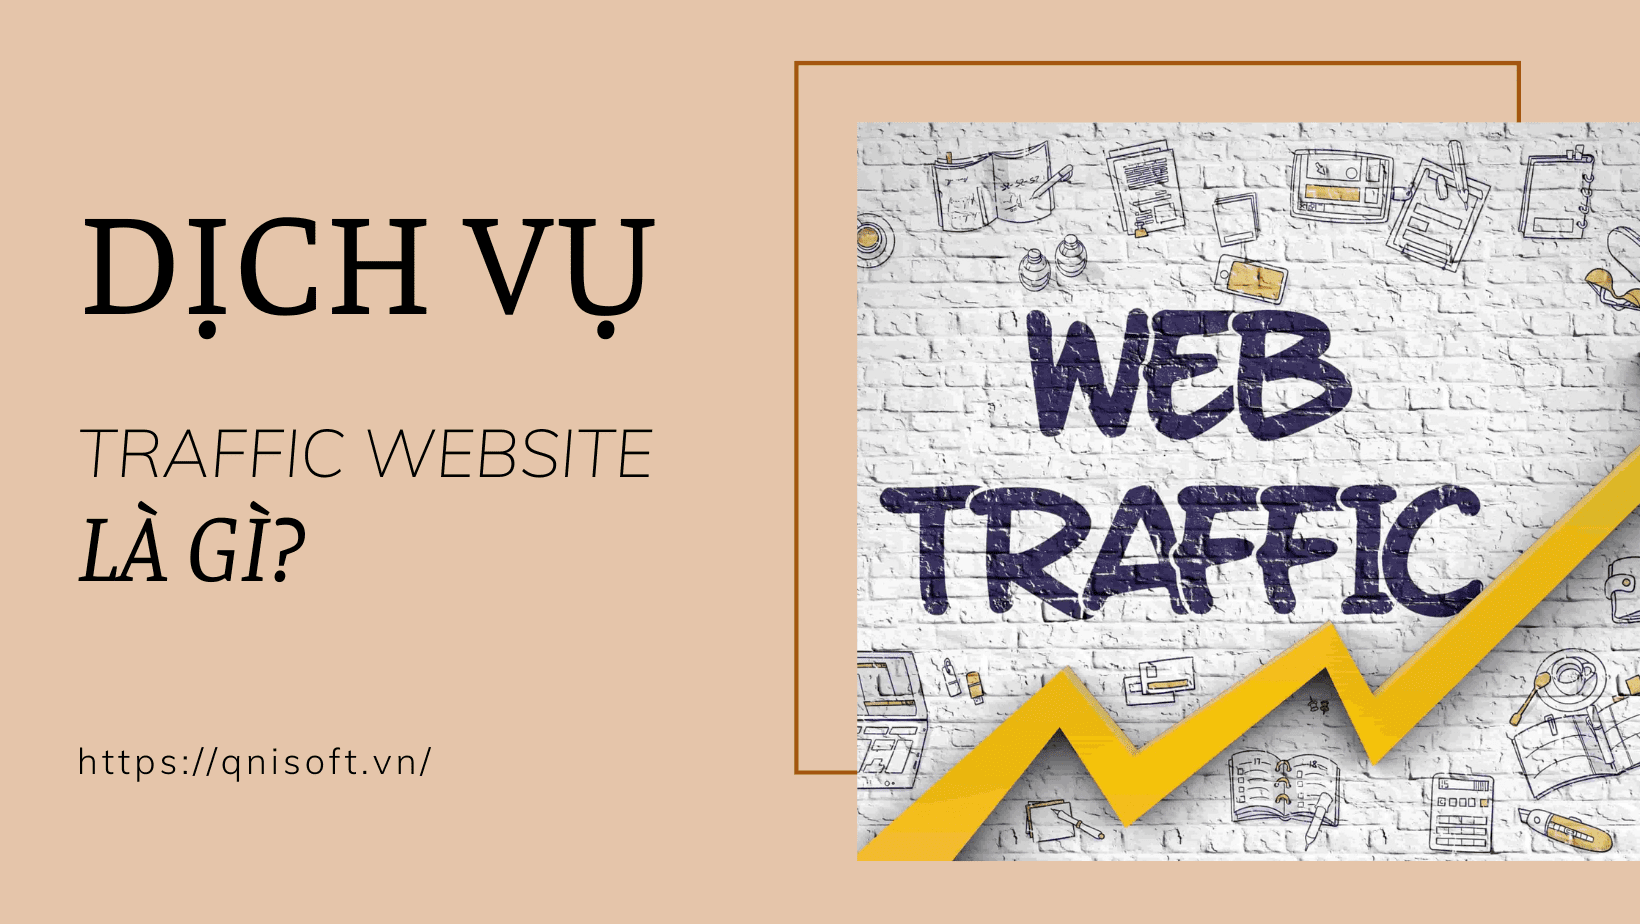 Dịch vụ traffic website là gì?